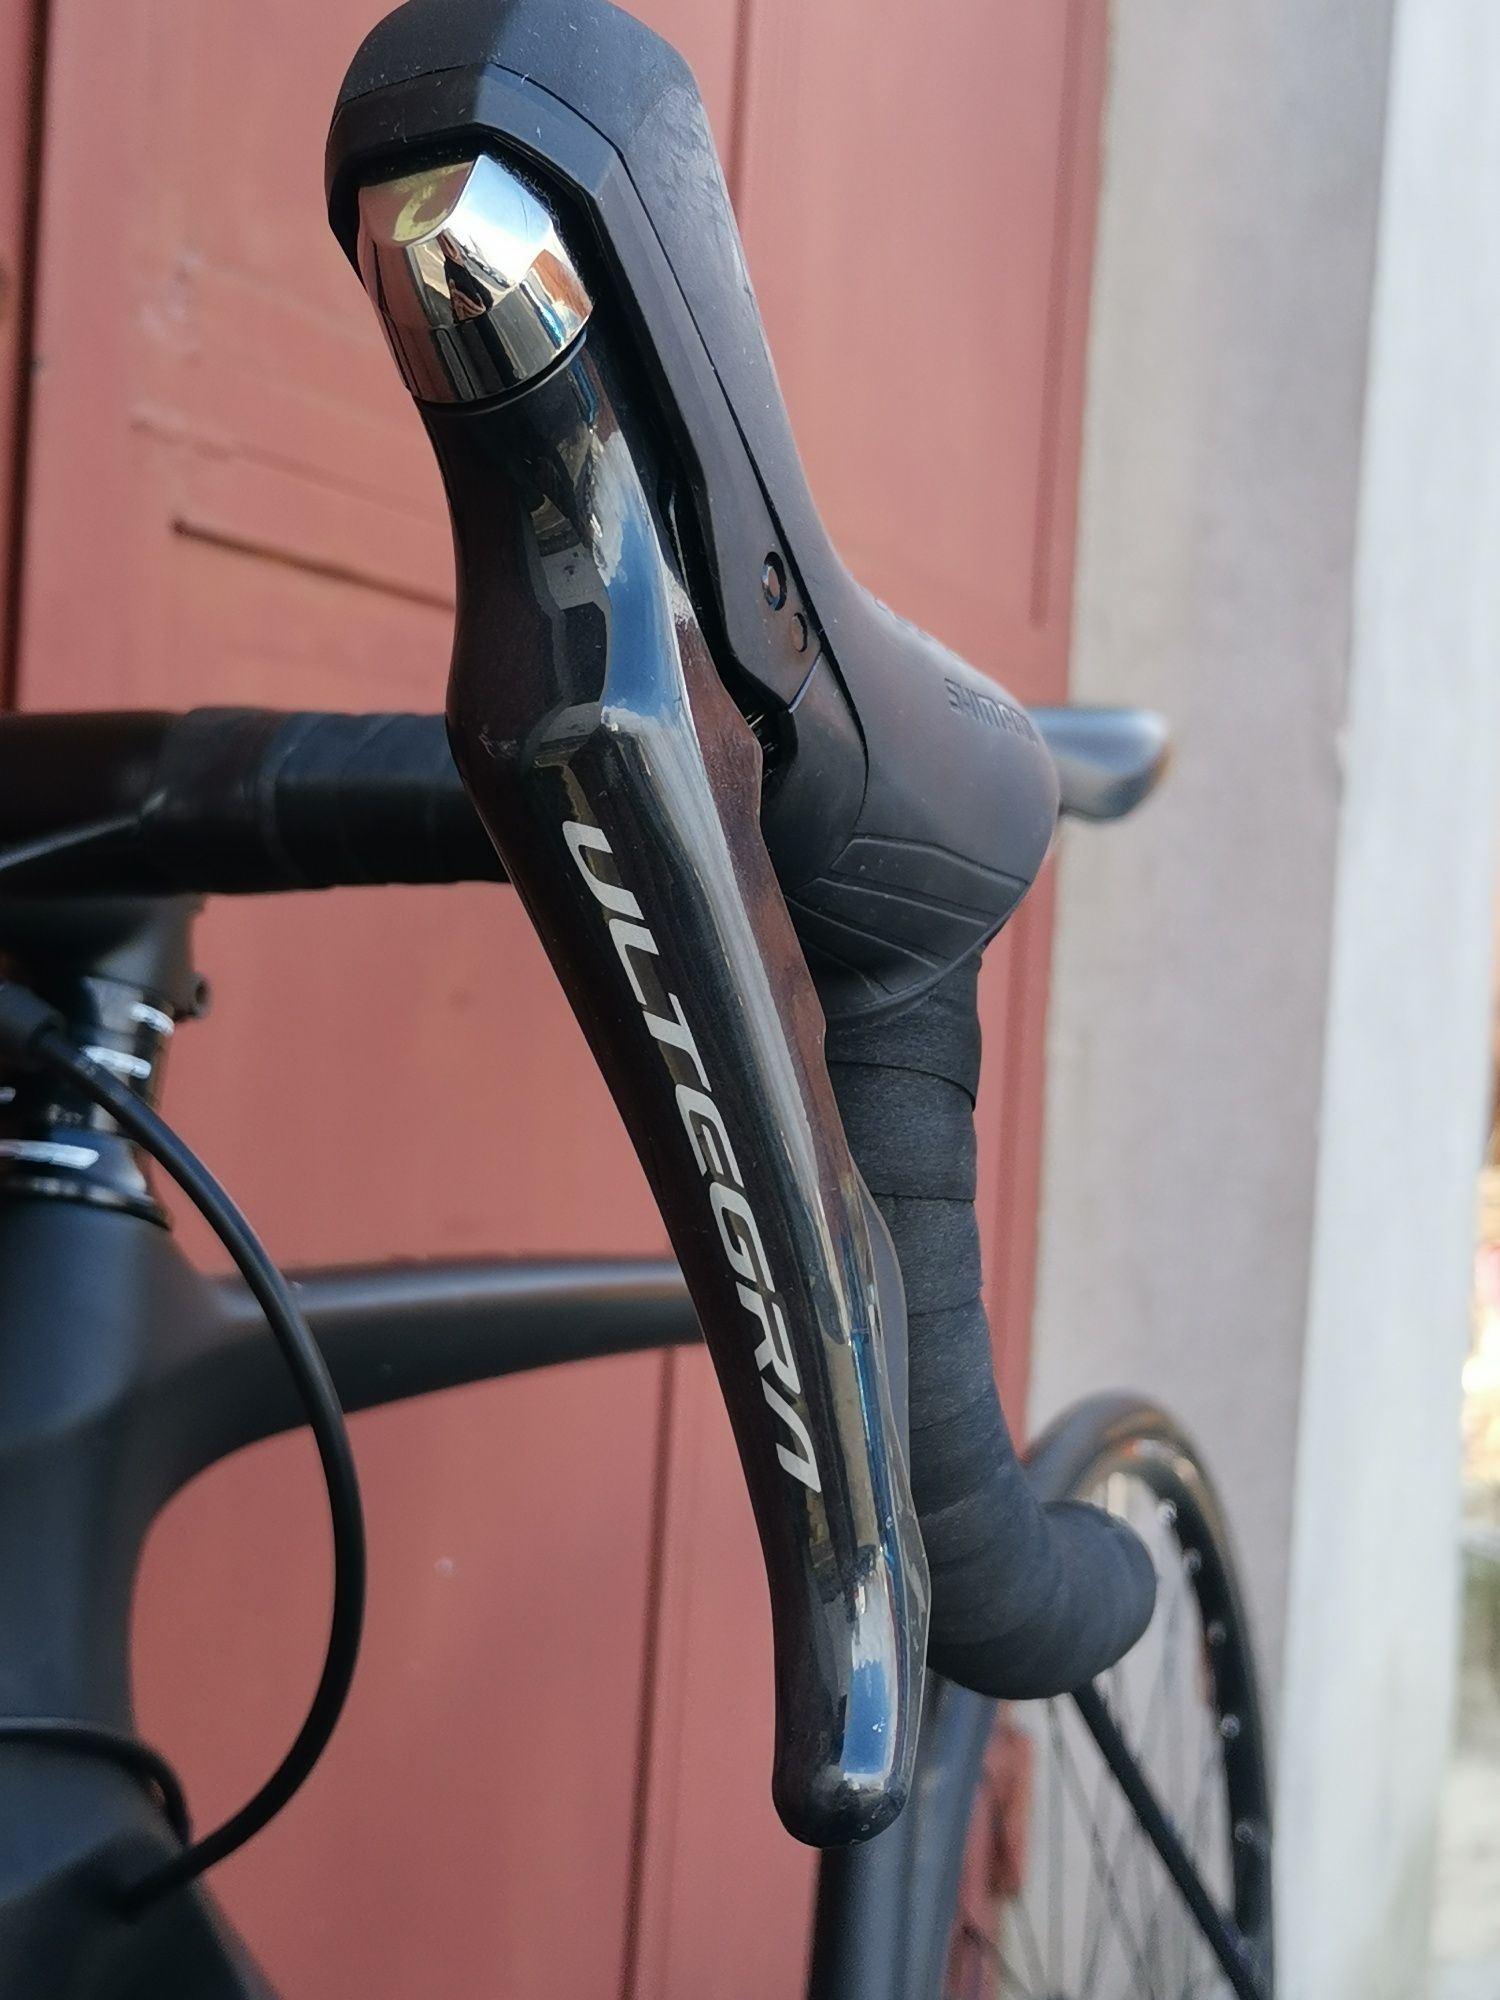 Bicicleta cursiera Carbon 2023 Rebel frane disc hidraulice ech Ultegra